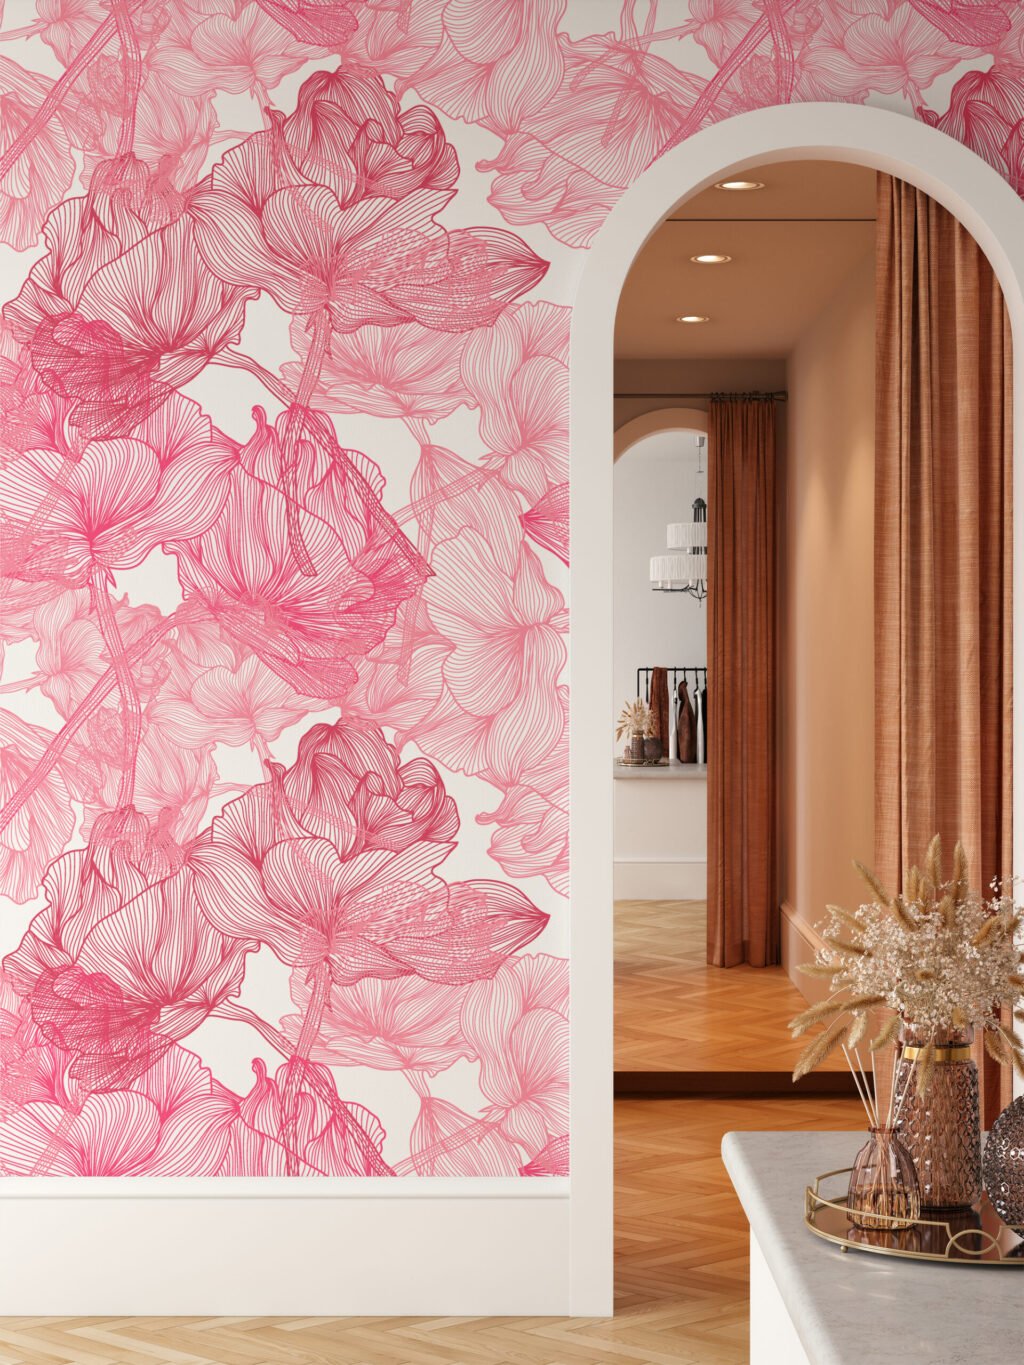 Büyük Pembe Gül Desenli Line Art Duvar Kağıdı, Zarif Botanik 3D Duvar Posteri Çiçekli Duvar Kağıtları 3